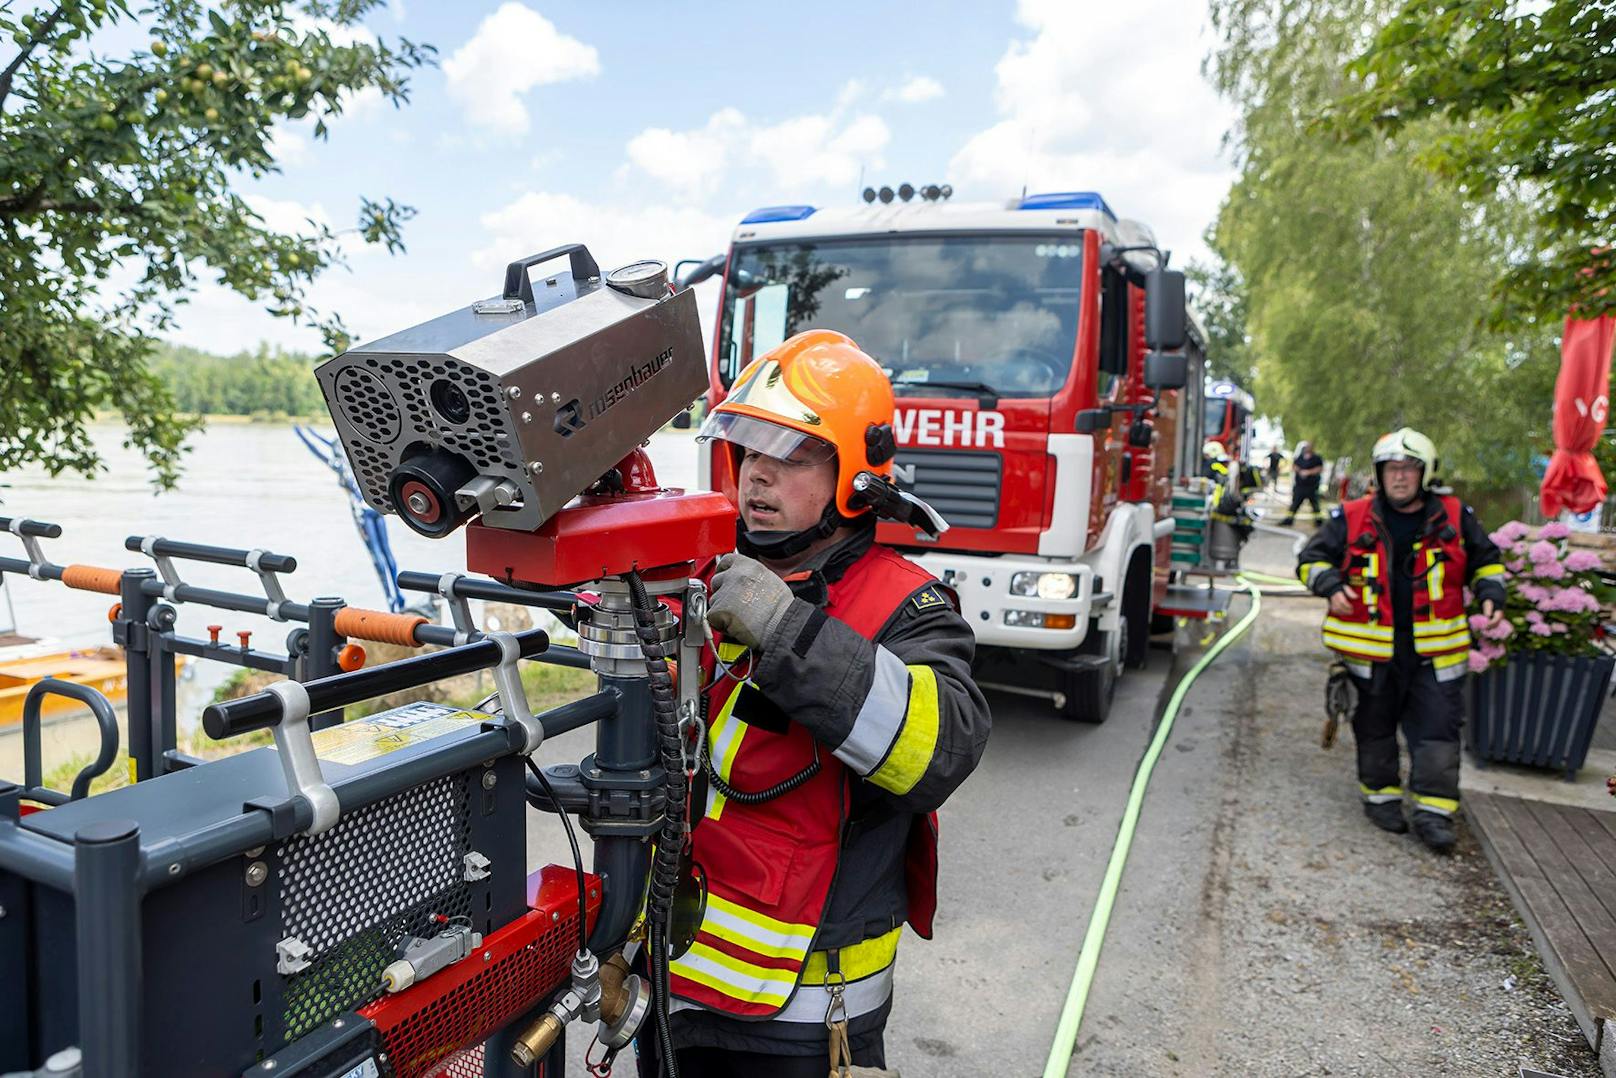 Ausflugslokal in Hollenburg bei Brand schwer beschädigt